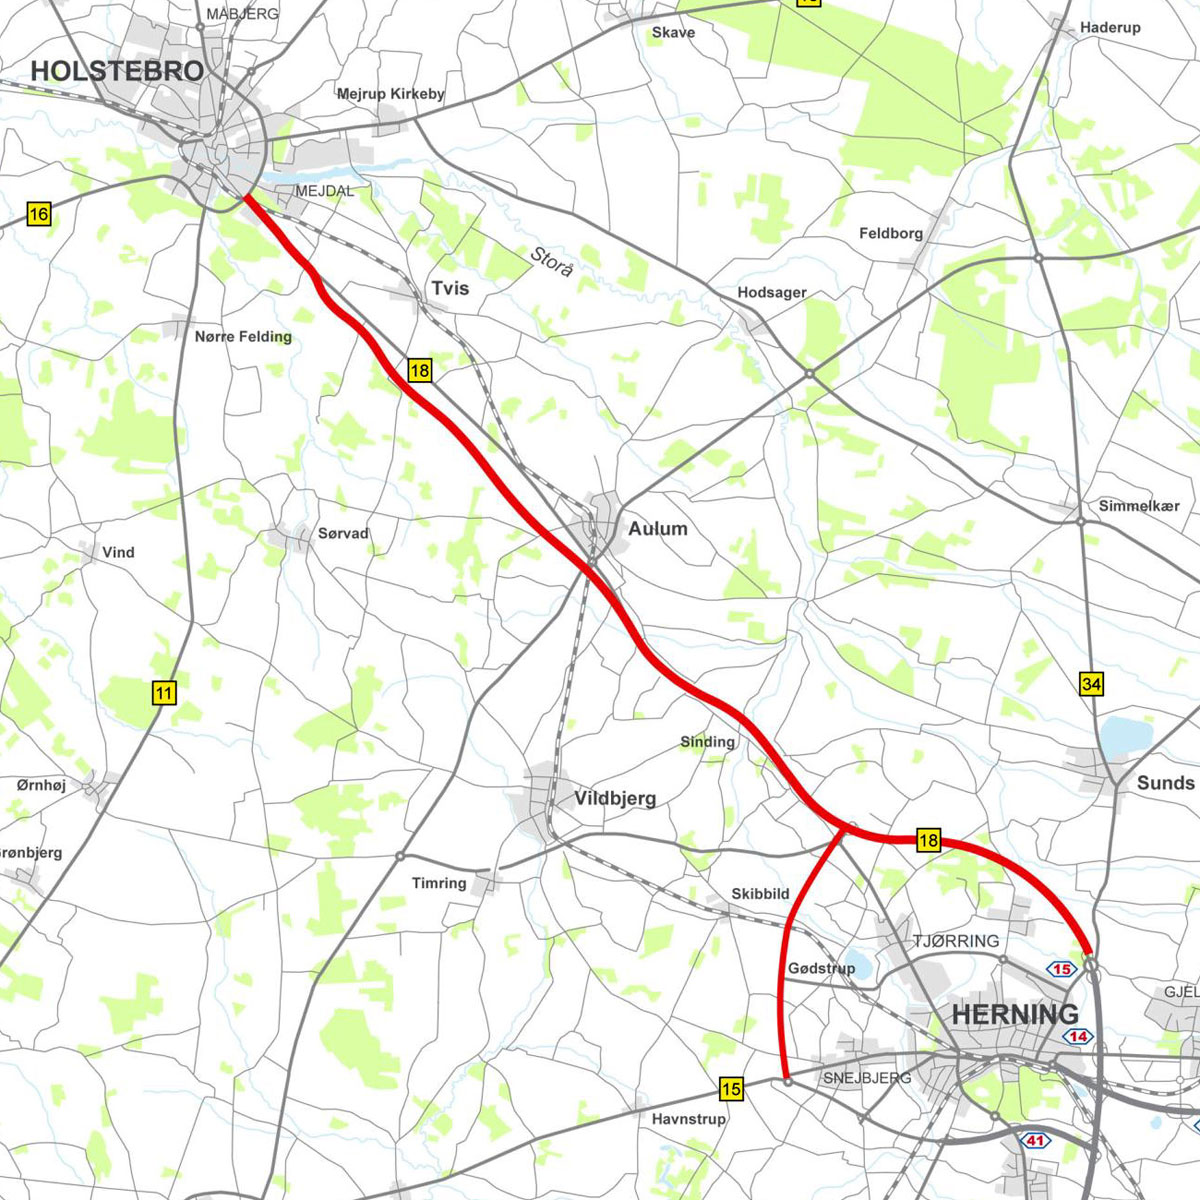 Vejdirektoratets hovedforslag med en motorvej fra Herning nord til Holstebro syd samt en landevej vest om Herning og fordi det nye regionssygehus. Desuden peger Vejdirektoratet på, at ringvejen i Holstebro skal udvides.